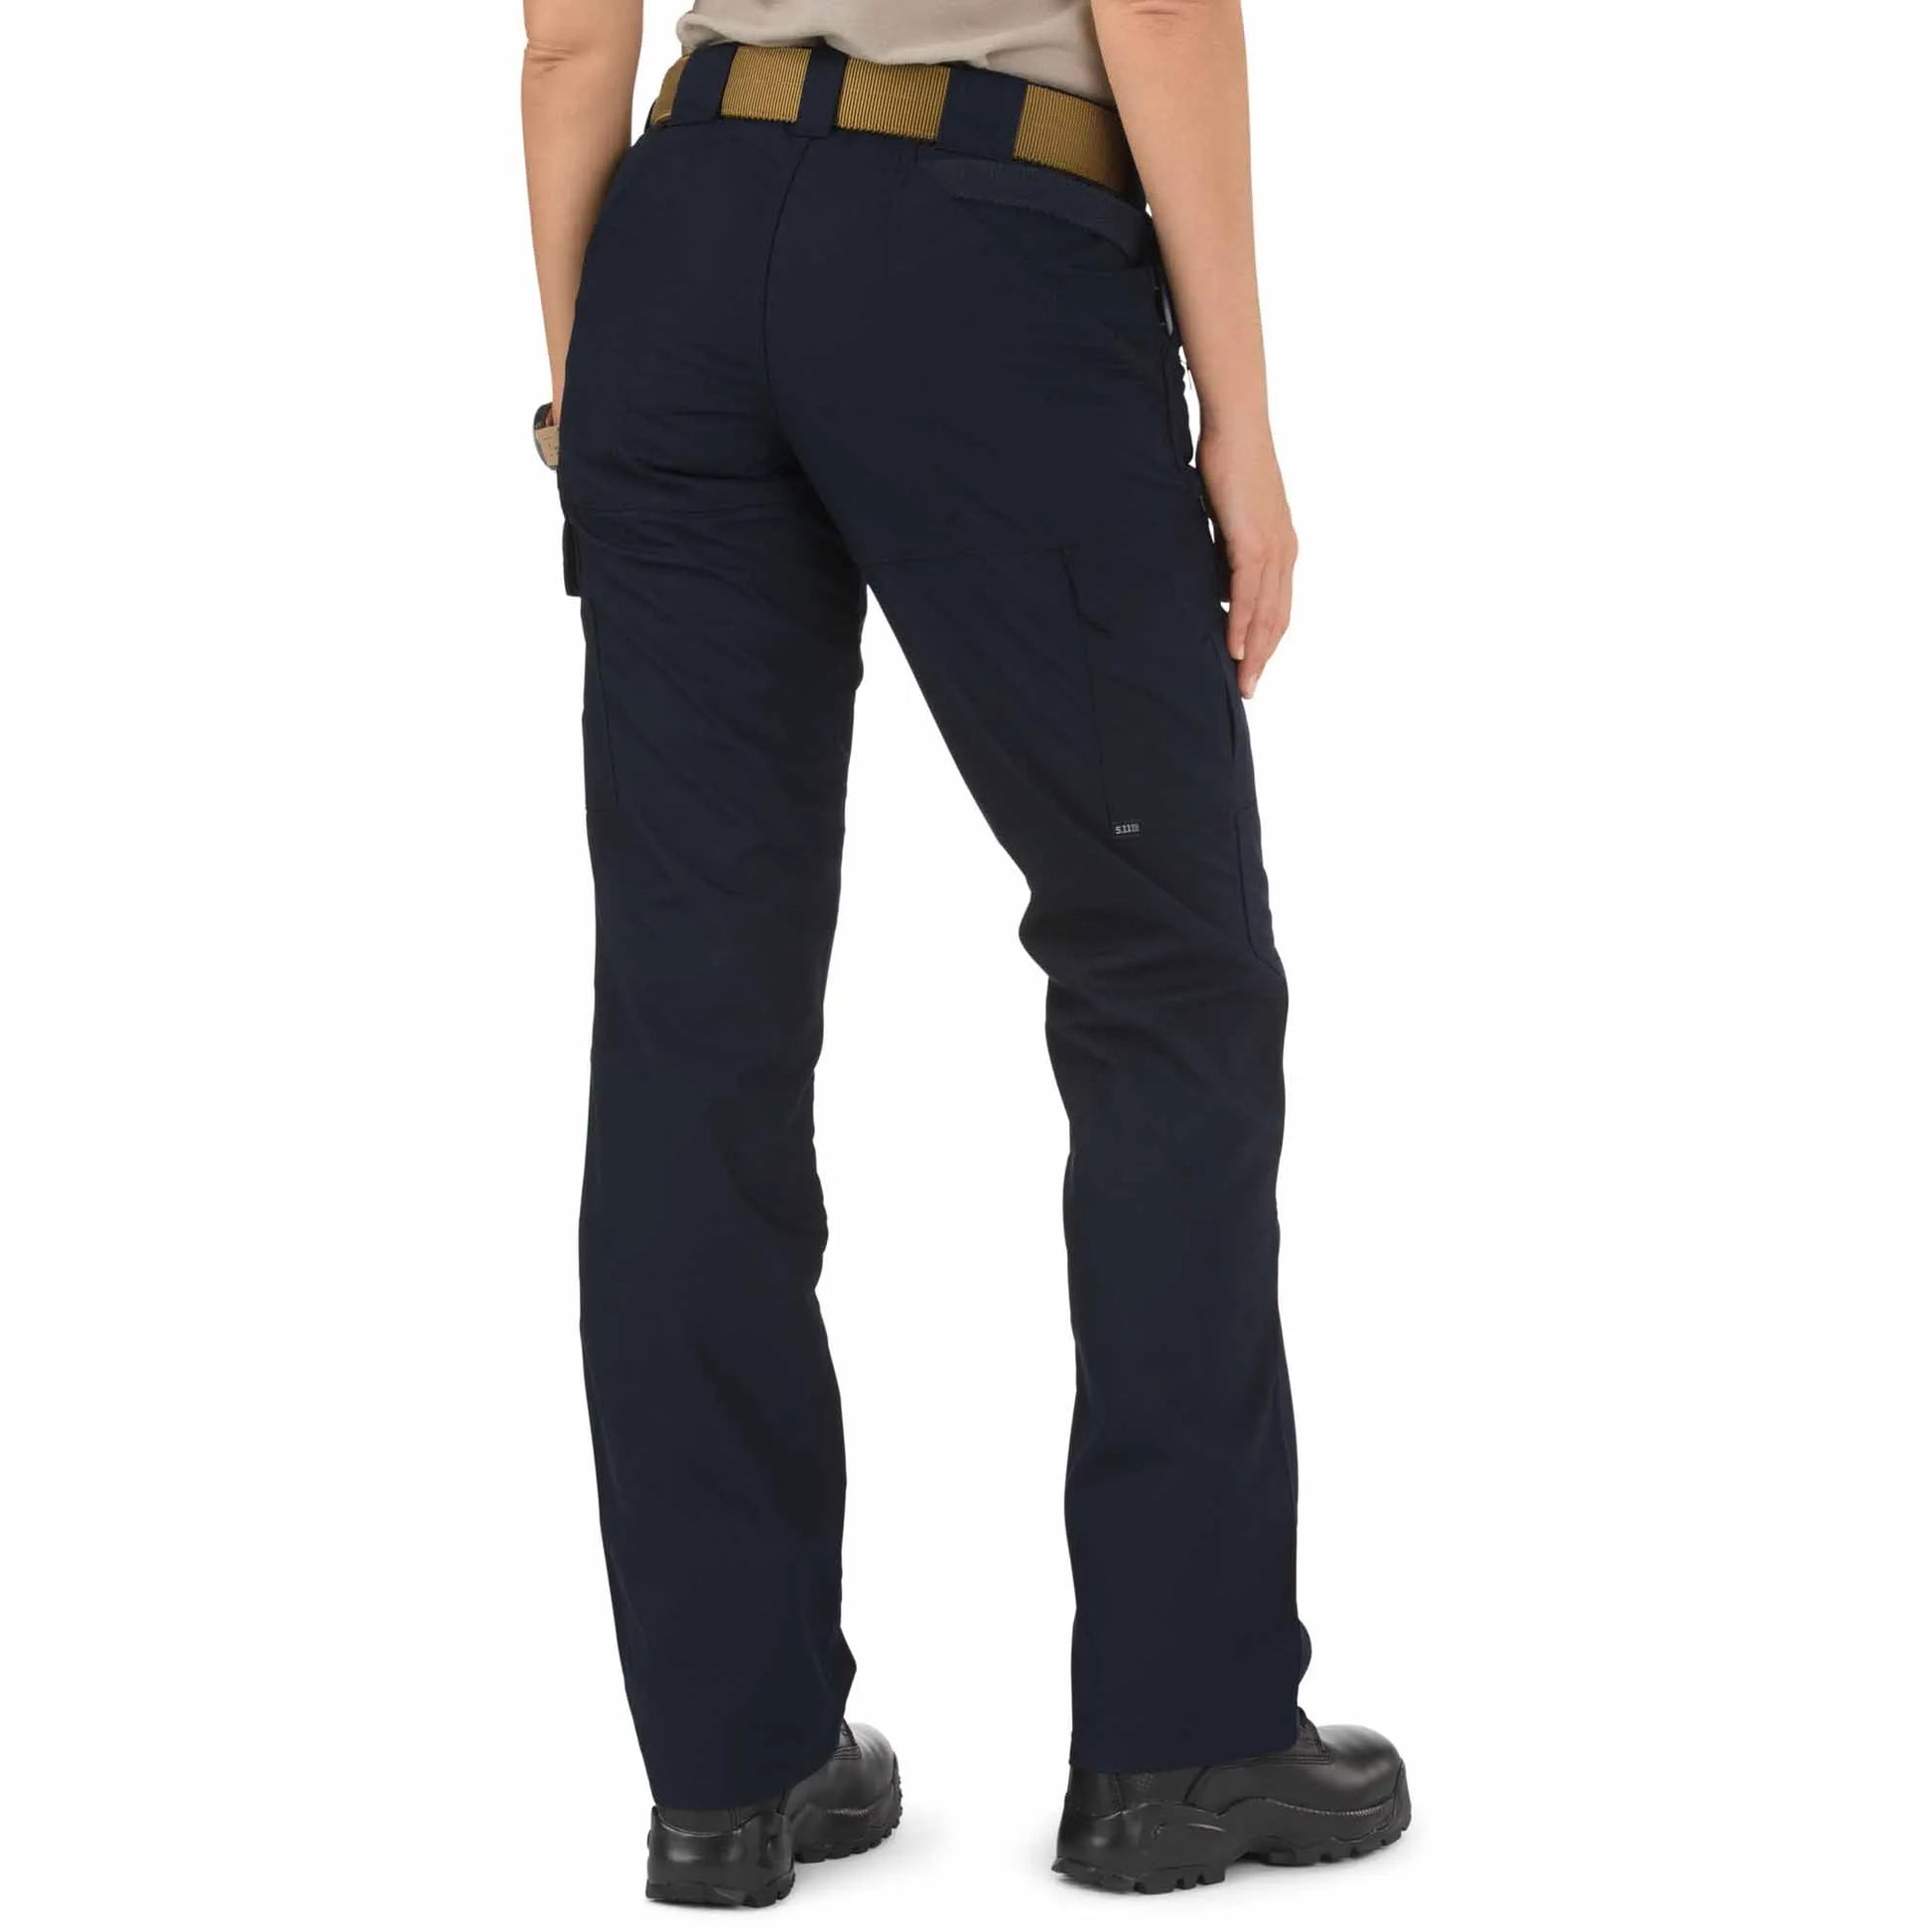 5.11 Tactical Women's Taclite Pro Ripstop Pants - Dark Navy